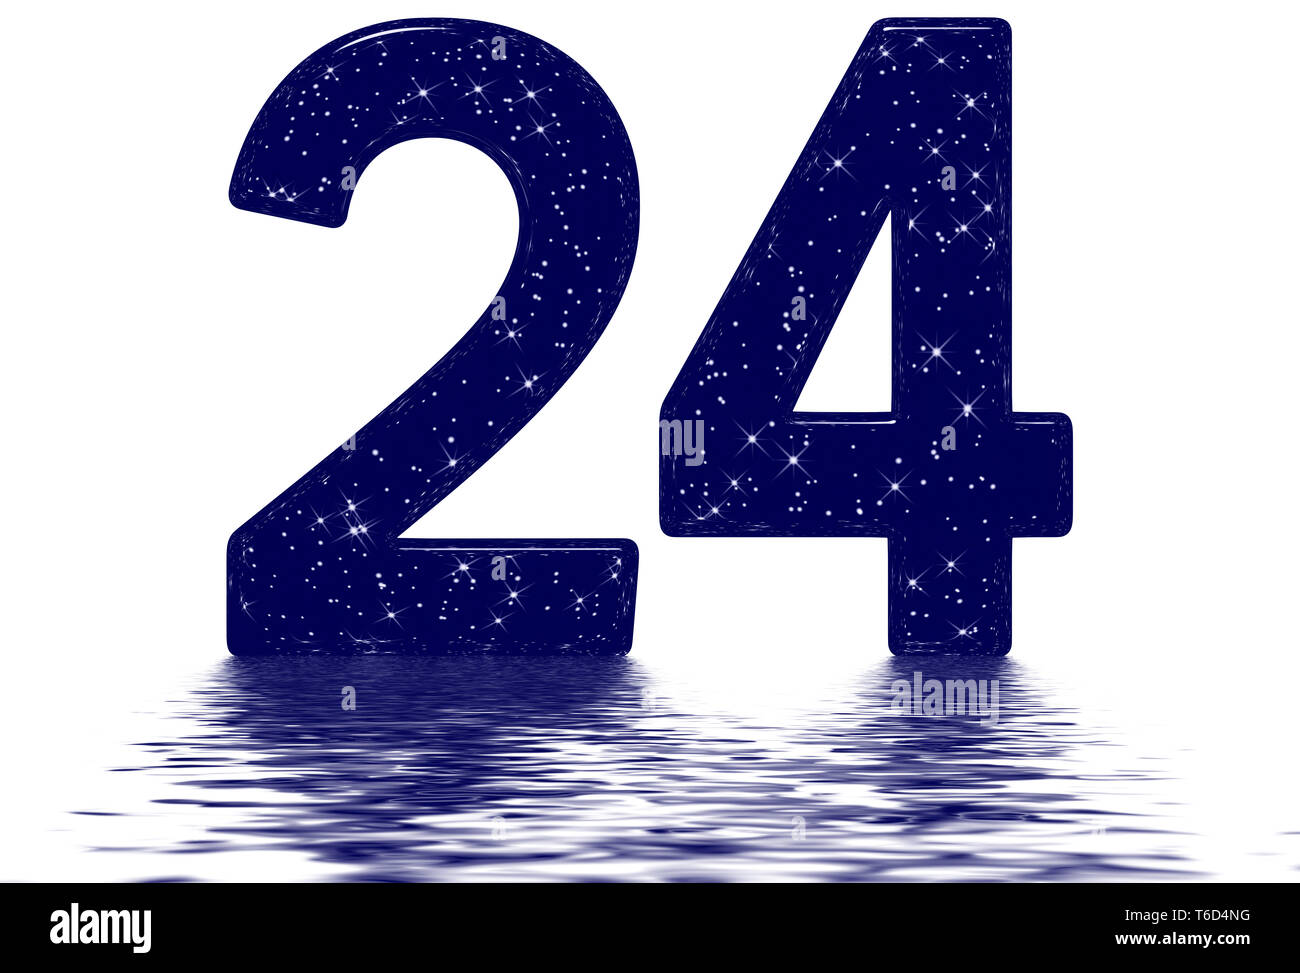 Ziffern 24, 24, Stern Himmel Textur Imitation, auf der Wasseroberfläche reflektiert, auf Weiß, 3D-Render isoliert Stockfoto